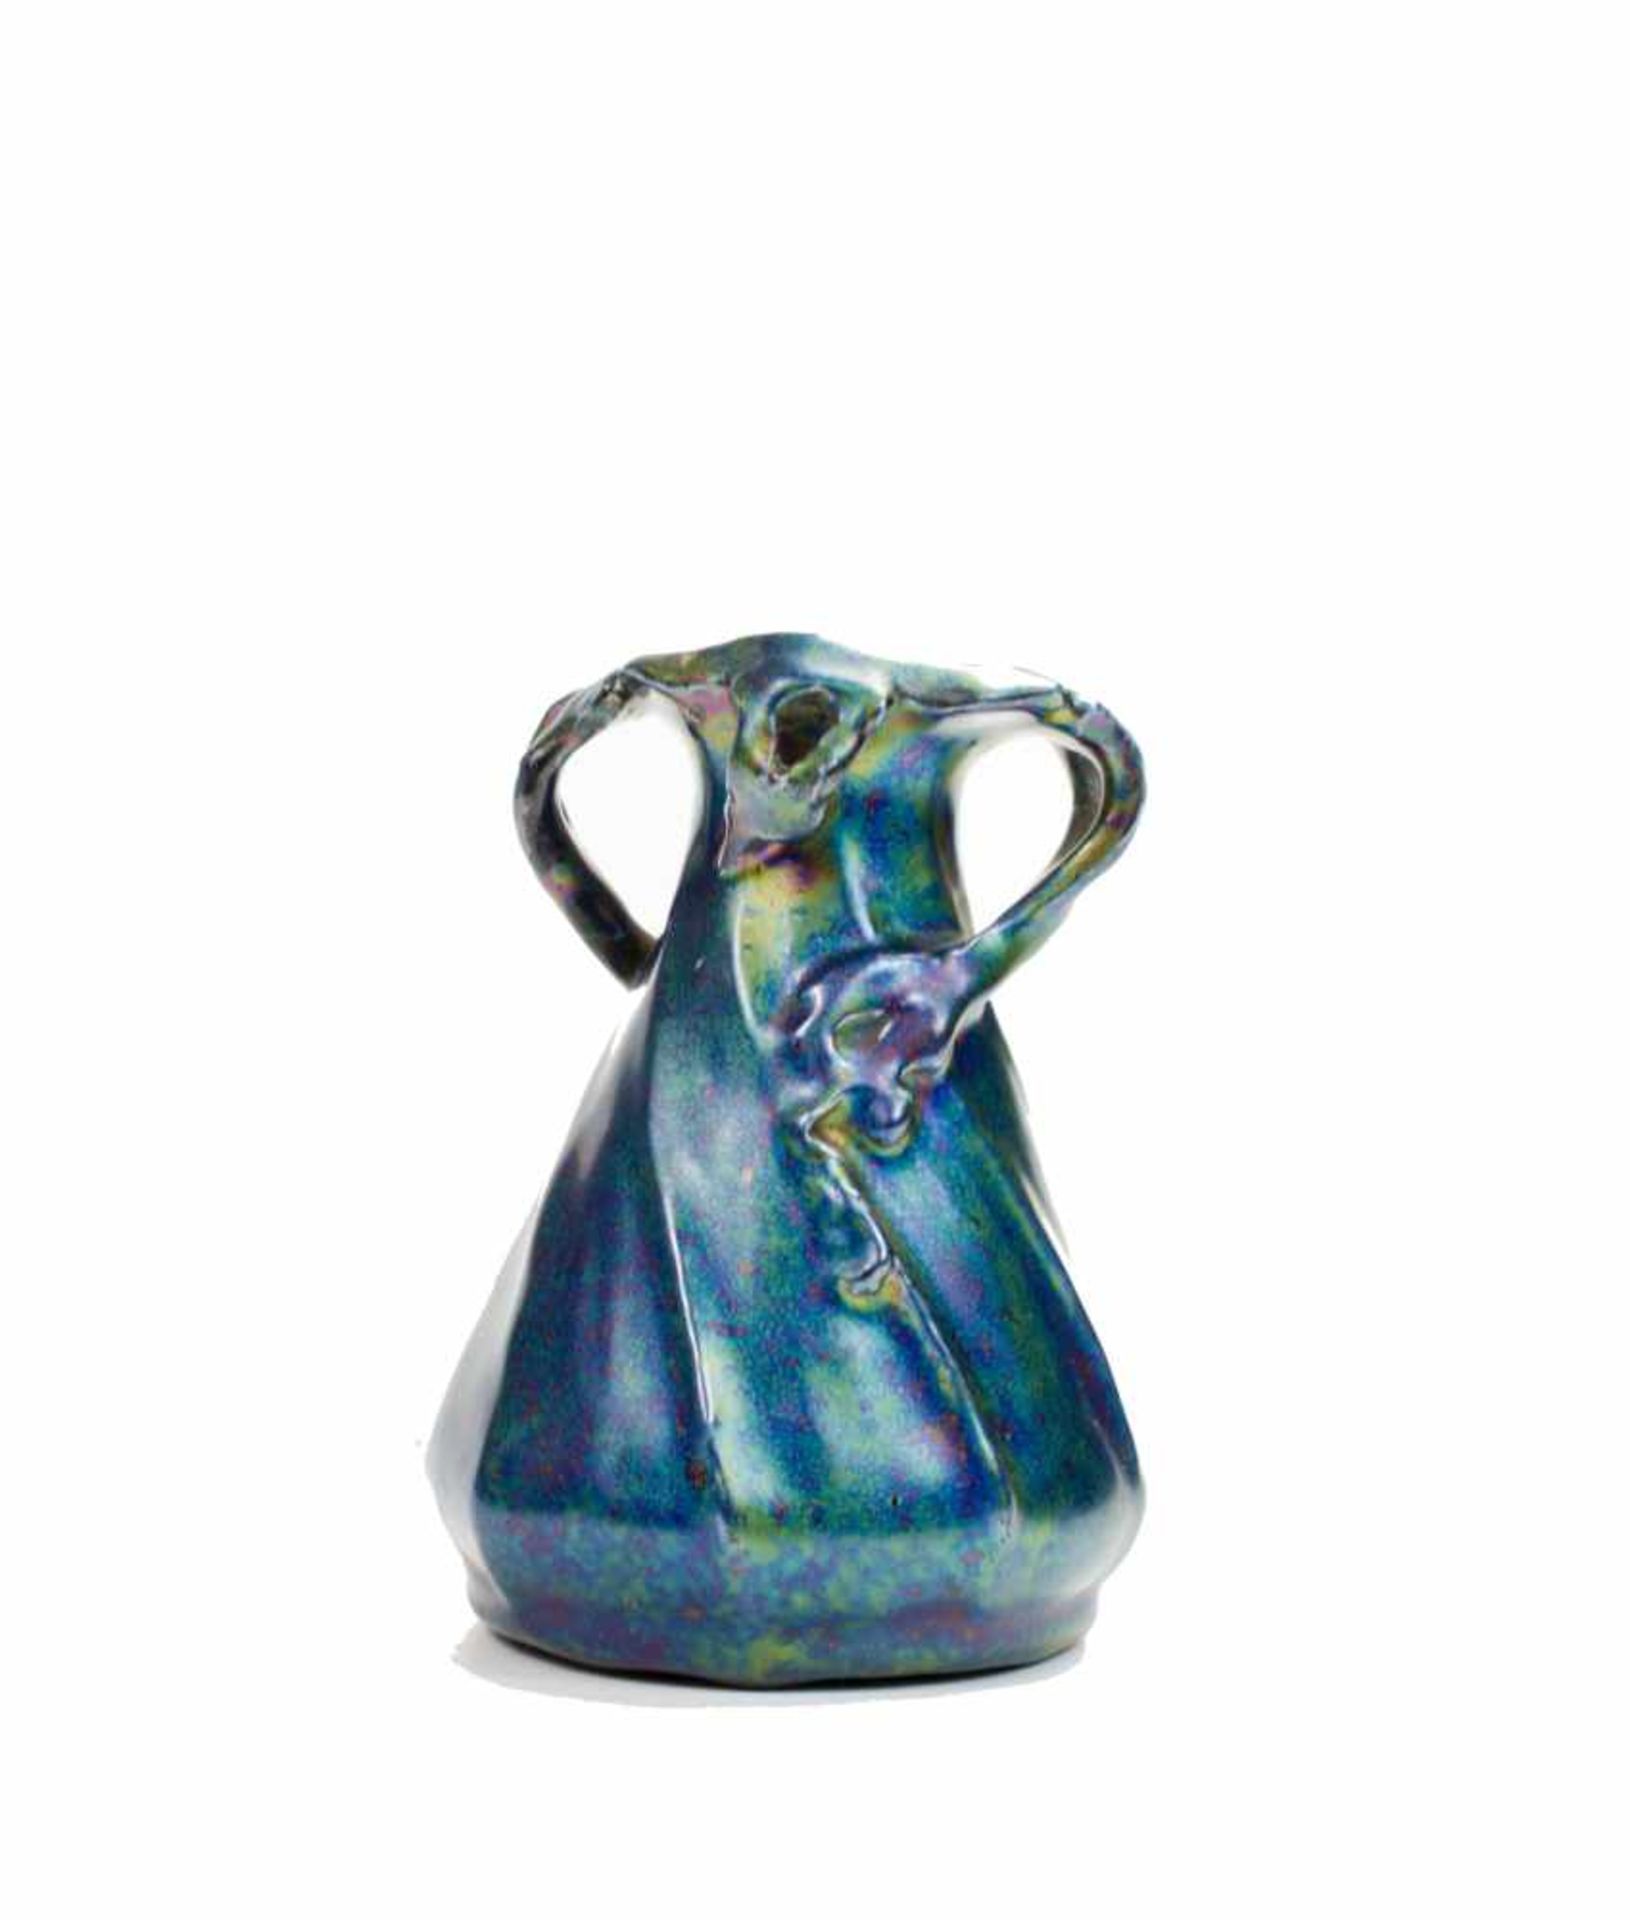 Jugendstil-VaseHeliosine, Österreich, um 1900, Keramik, irisierende Glasur, Höhe 11,5 cm, sehr guter